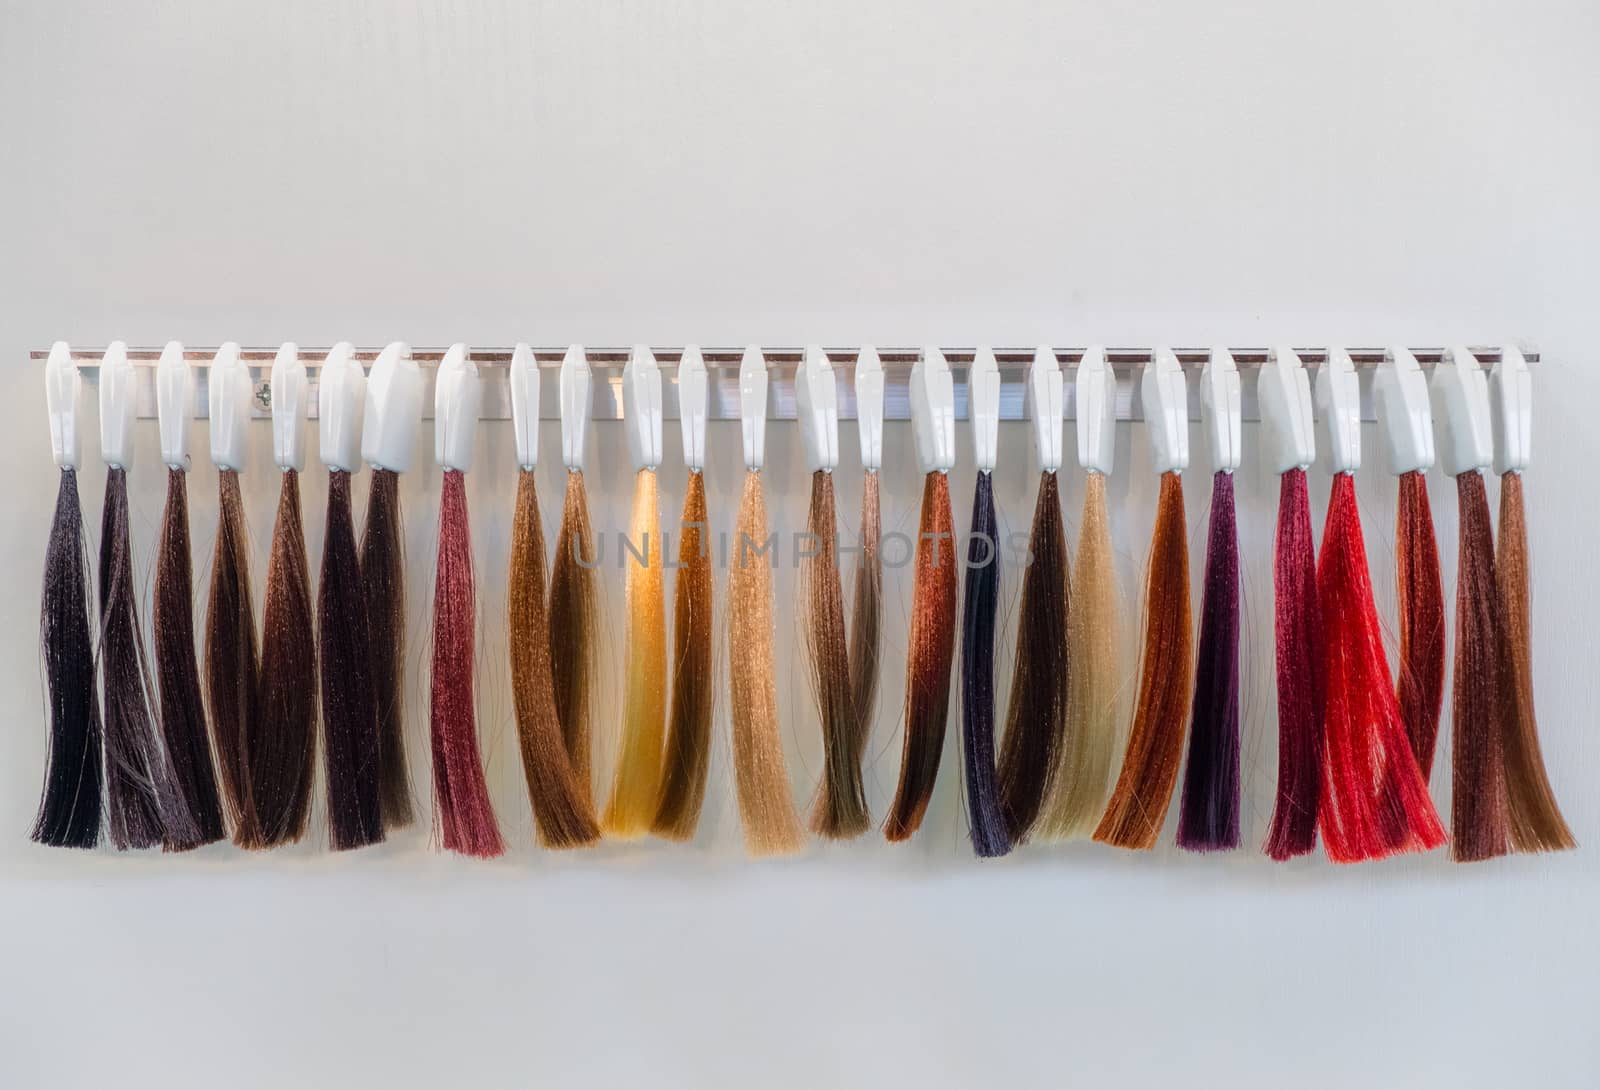 hair dye strands samples for hair dresser